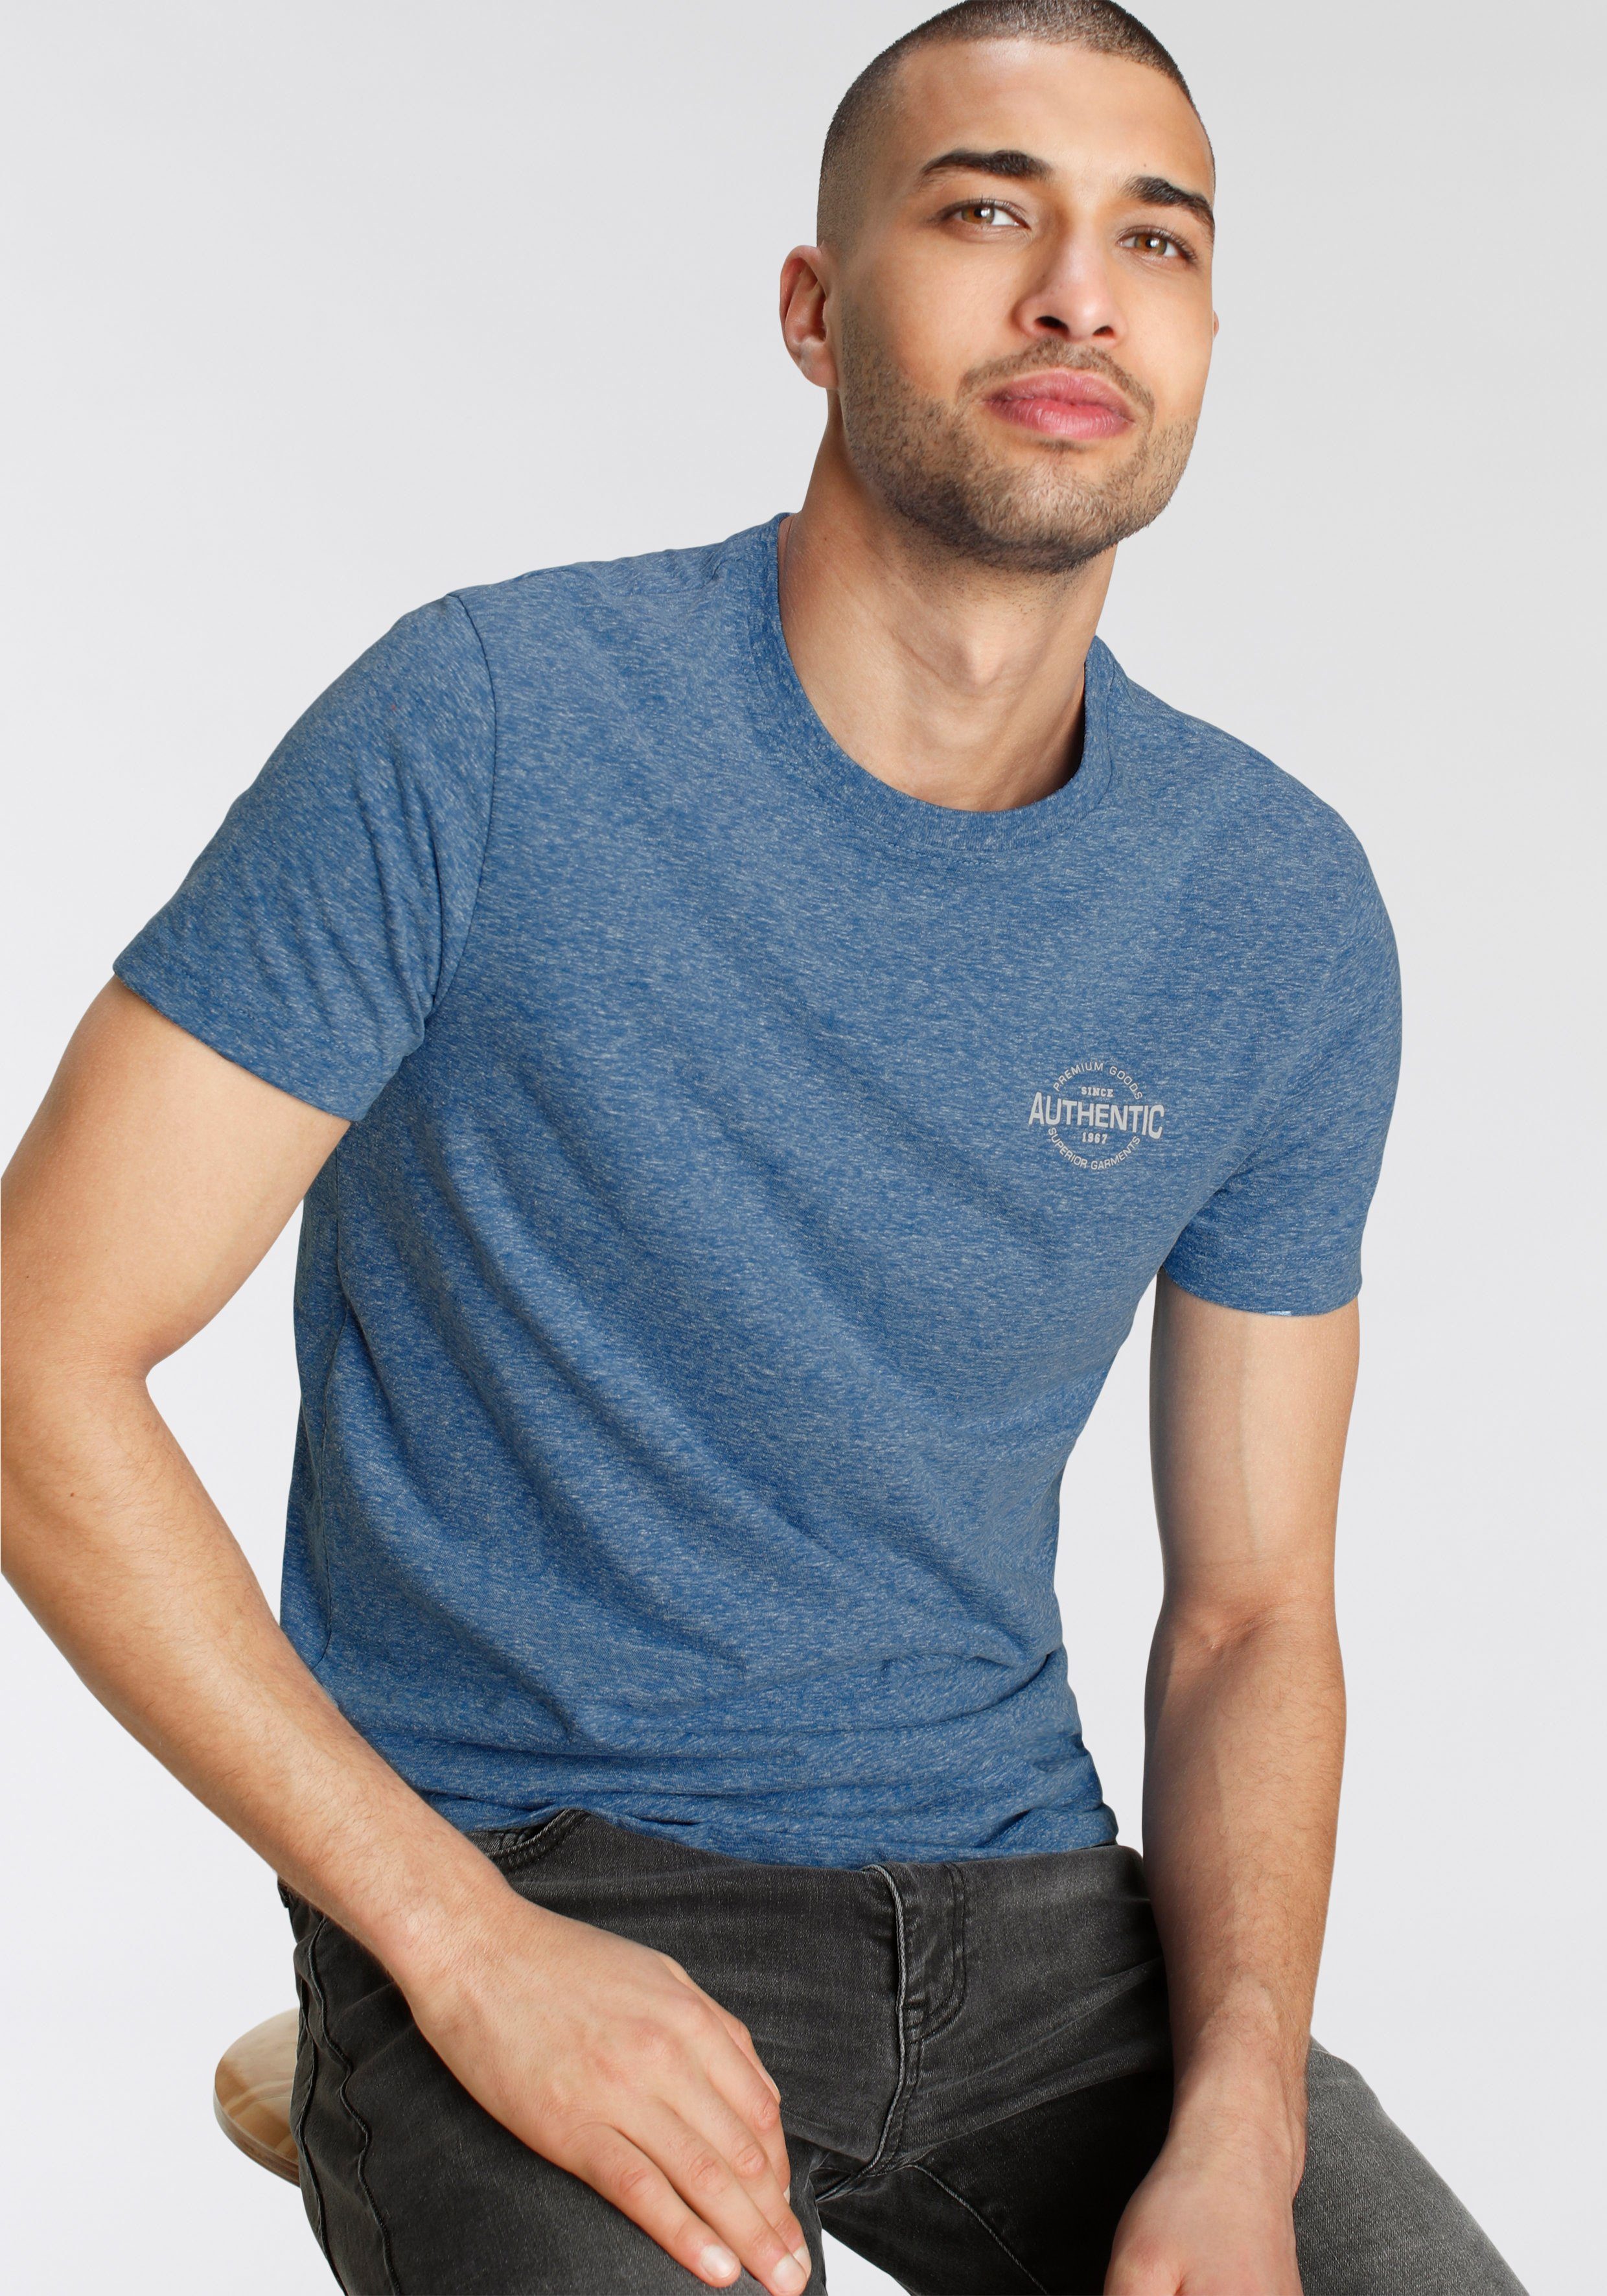 AJC T-Shirt in besonderer mit Print meliert Melange Logo Optik blau und